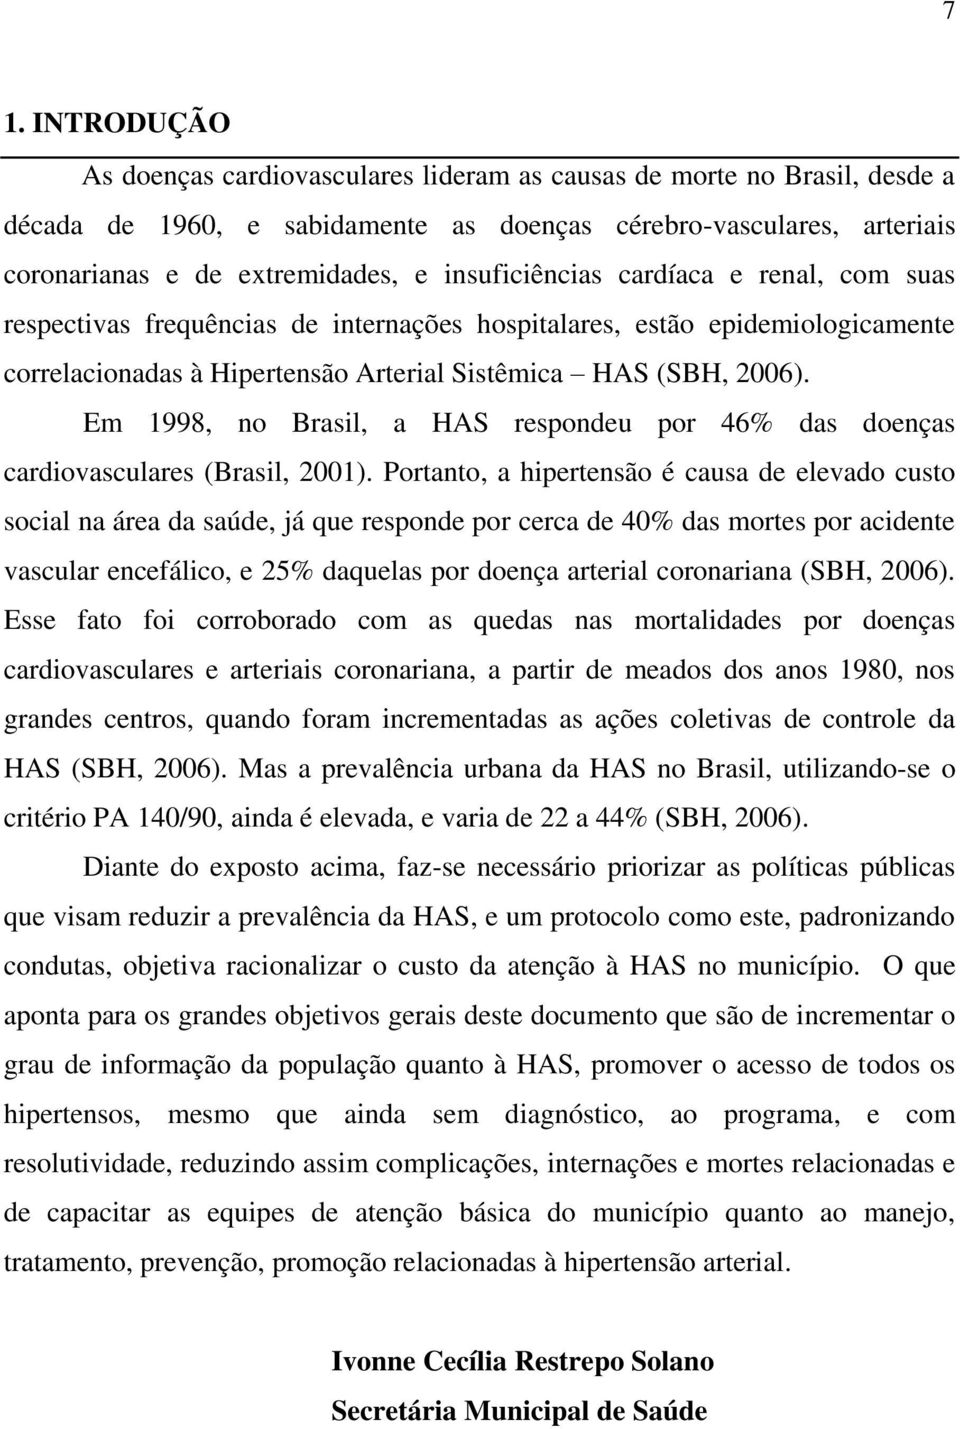 Em 1998, no Brasil, a HAS respondeu por 46% das doenças cardiovasculares (Brasil, 2001).